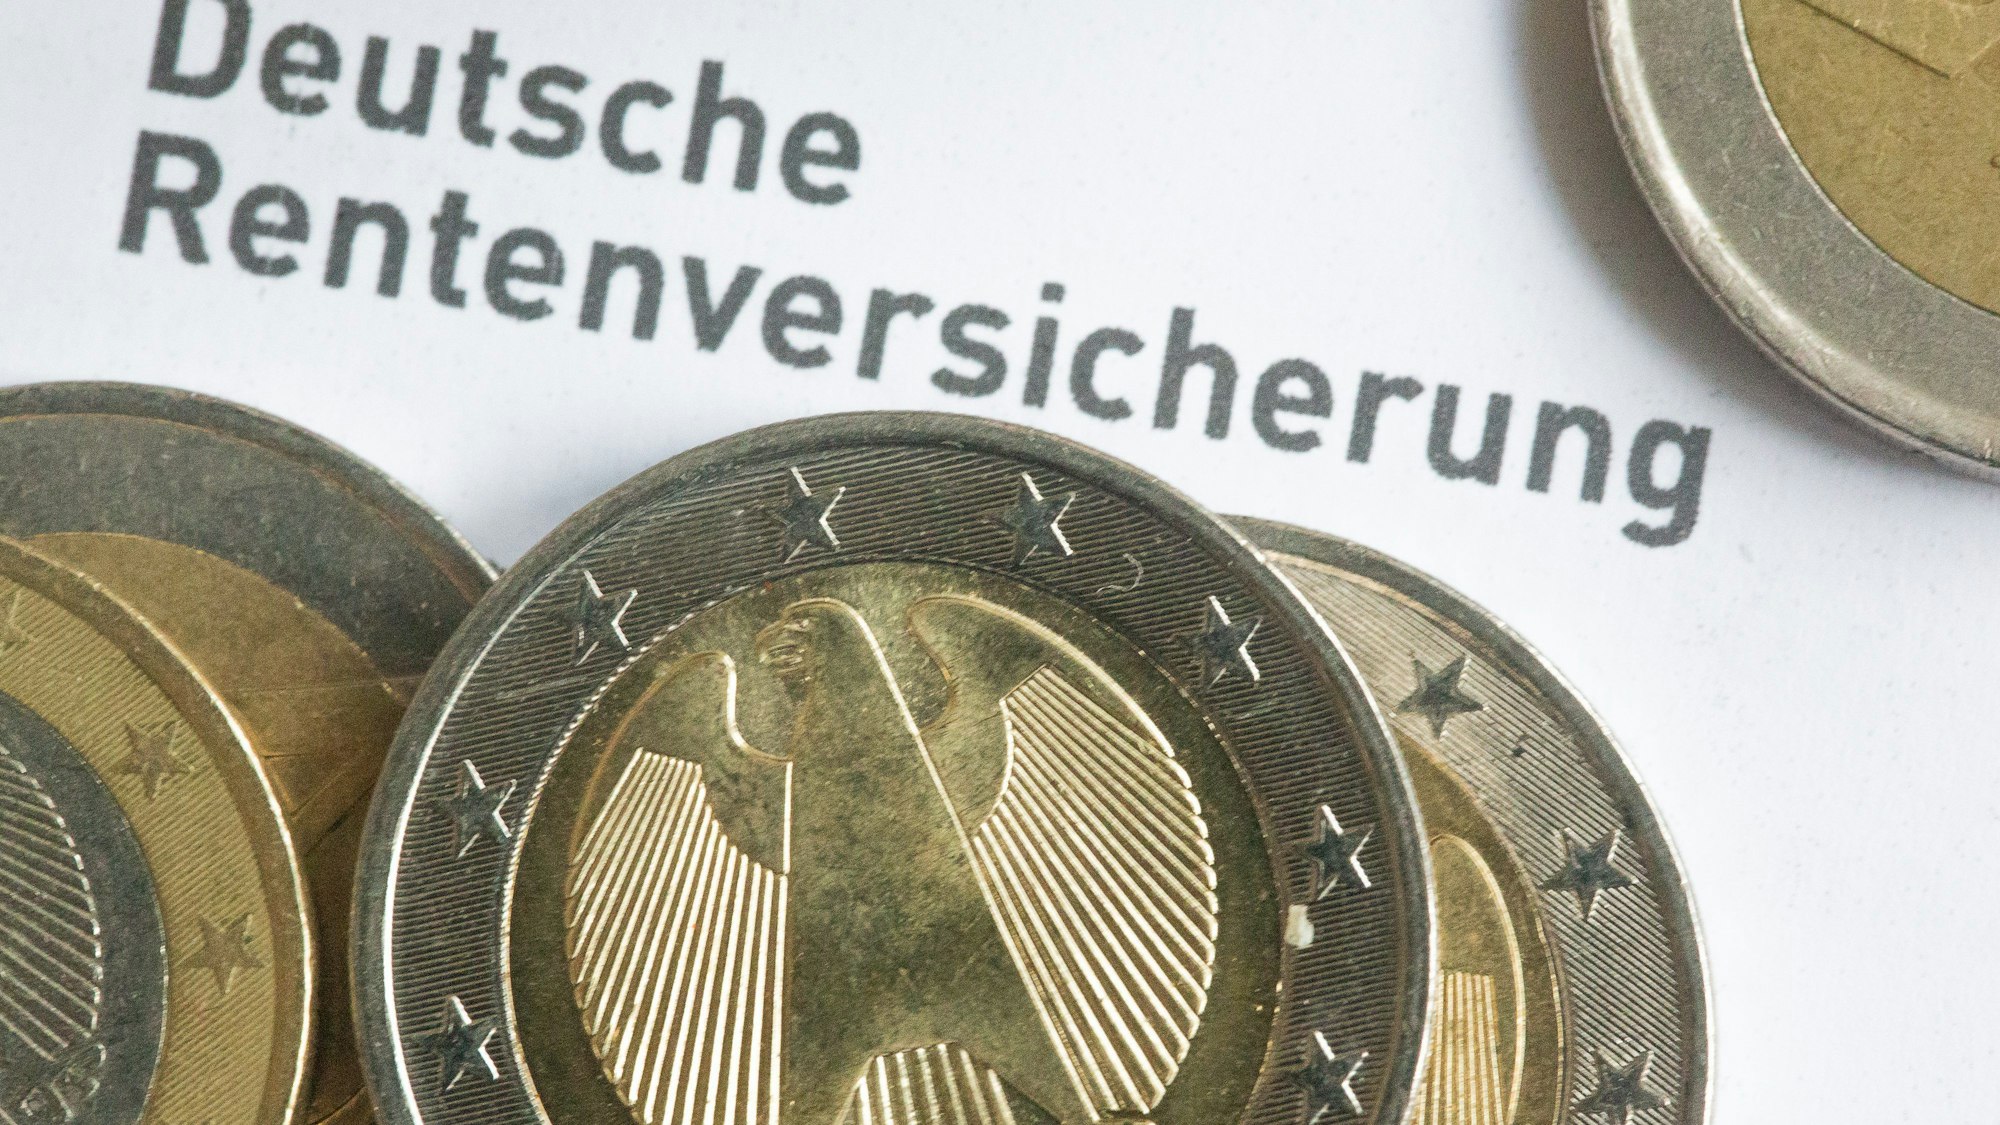 Münzen liegen auf einer Renteninformation der Deutschen Rentenversicherung.